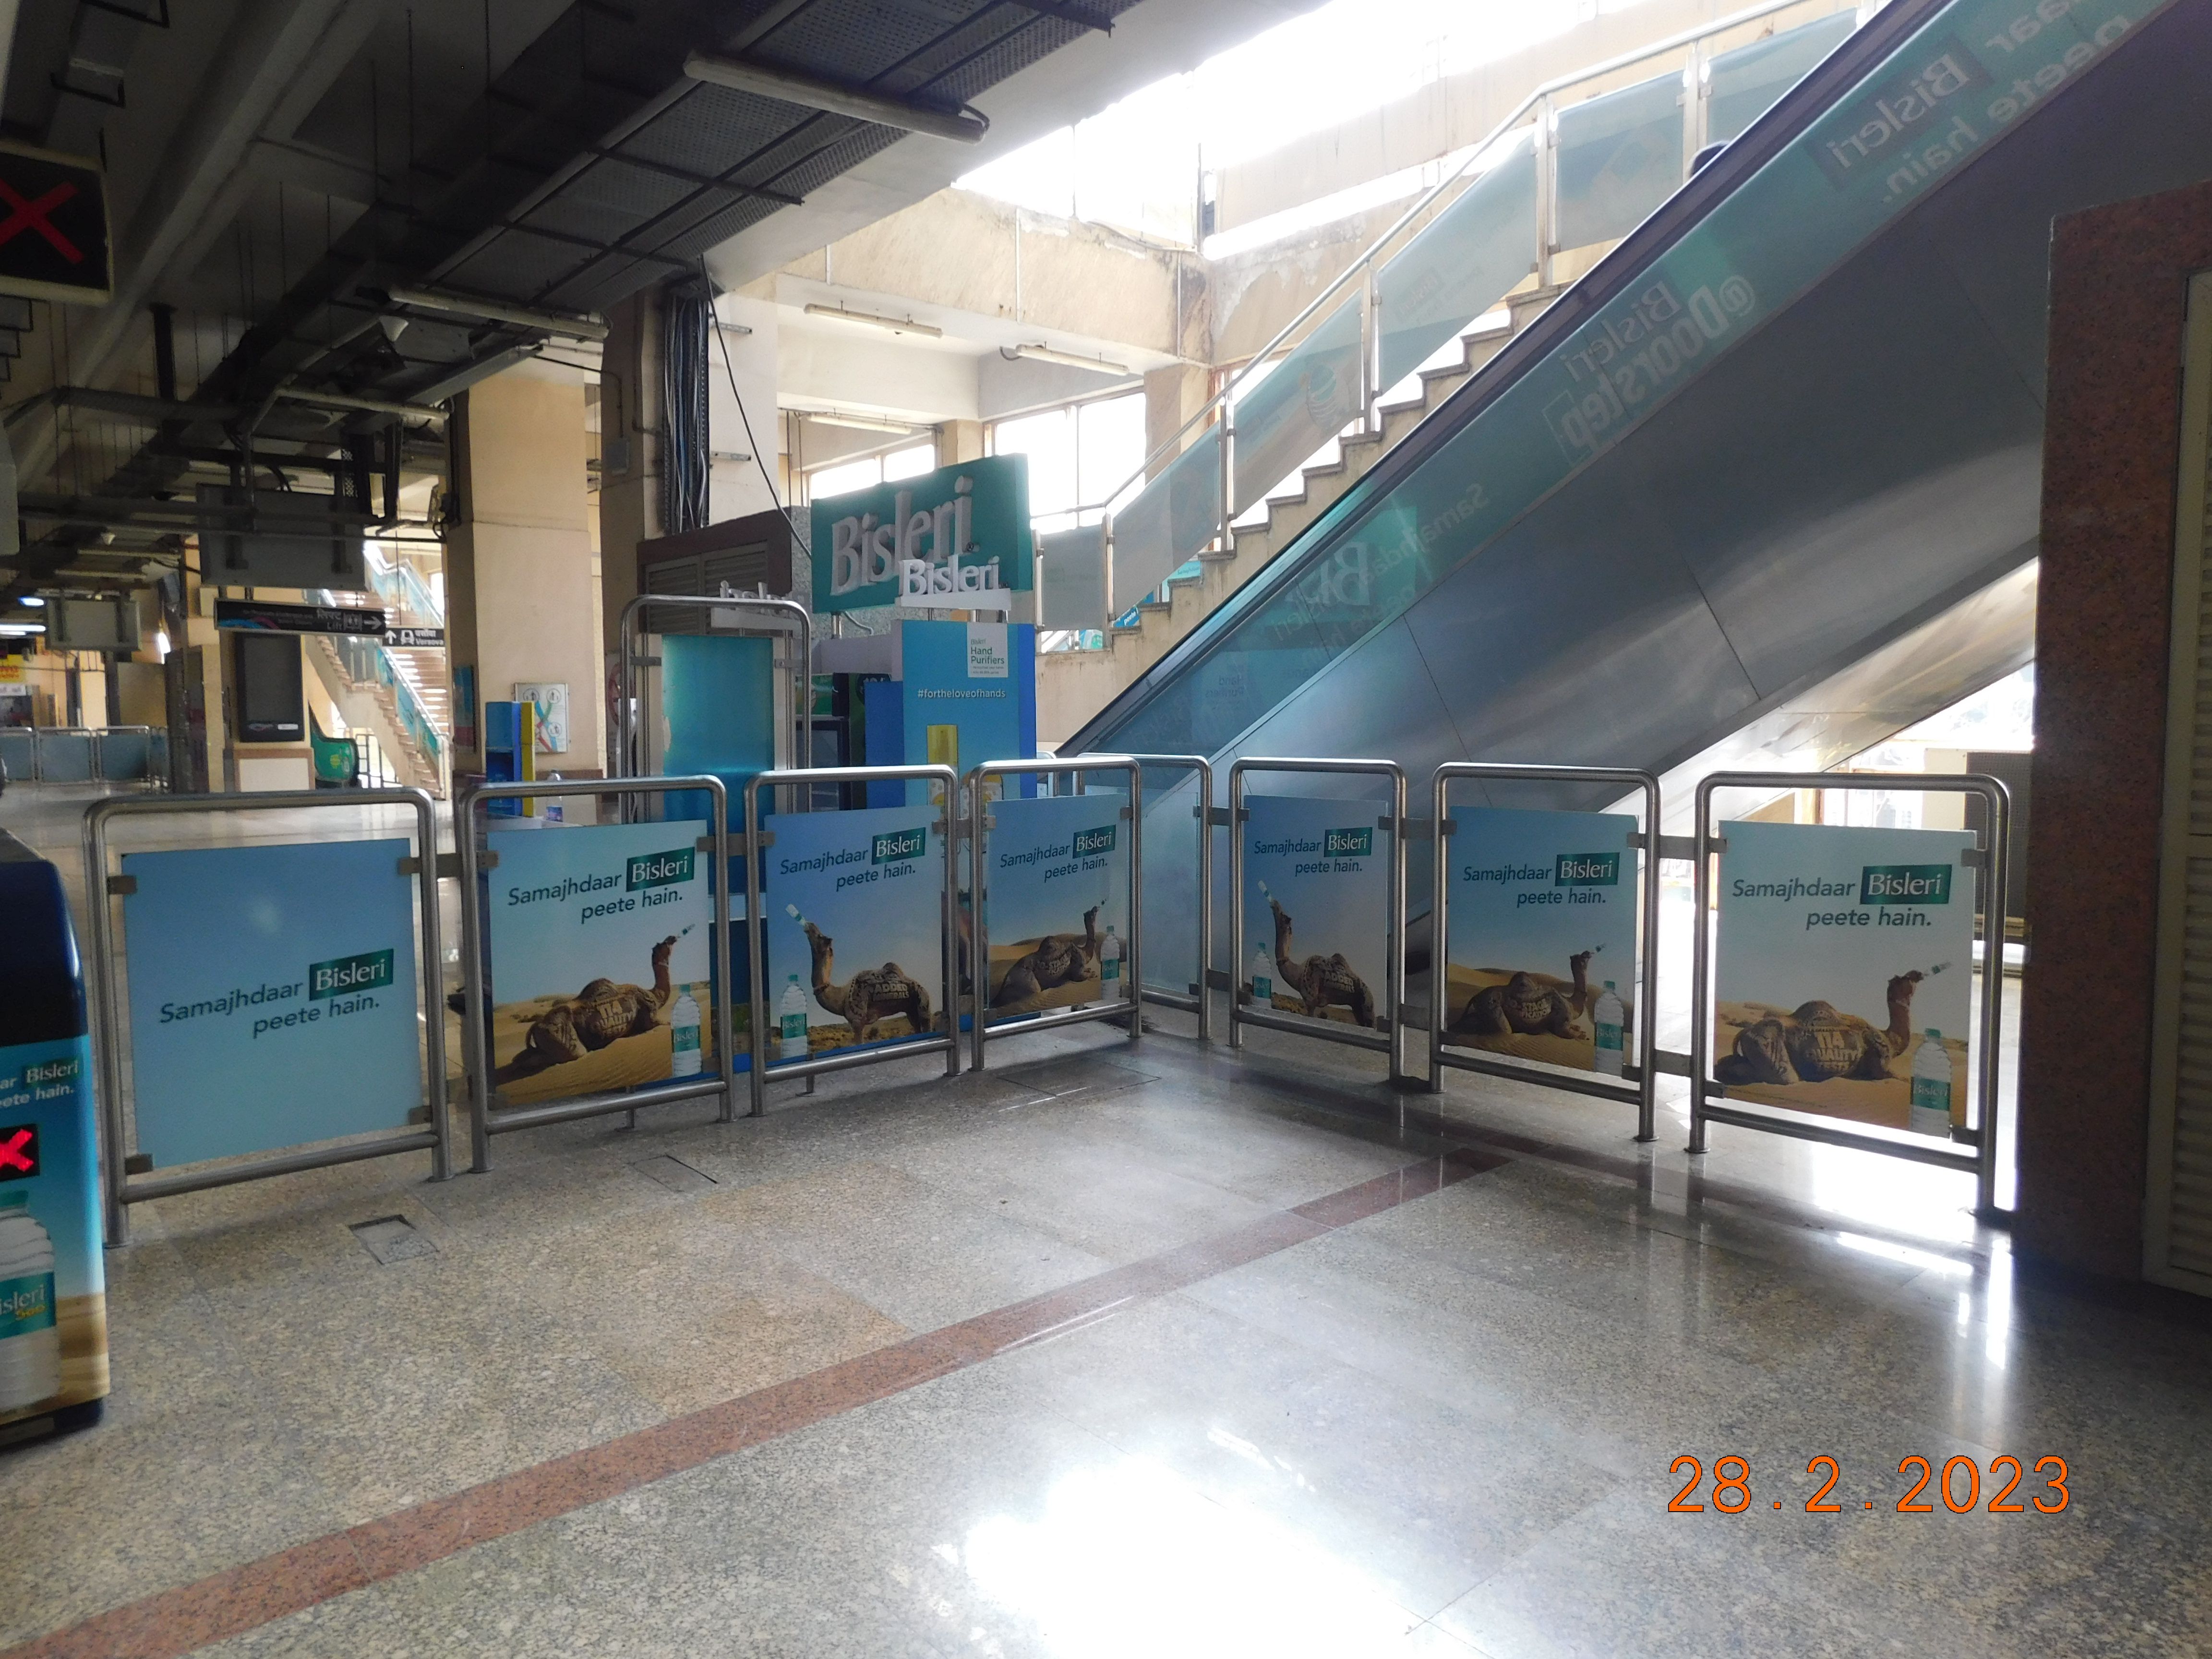 Bisleri Campaign at Mumbai Metro station